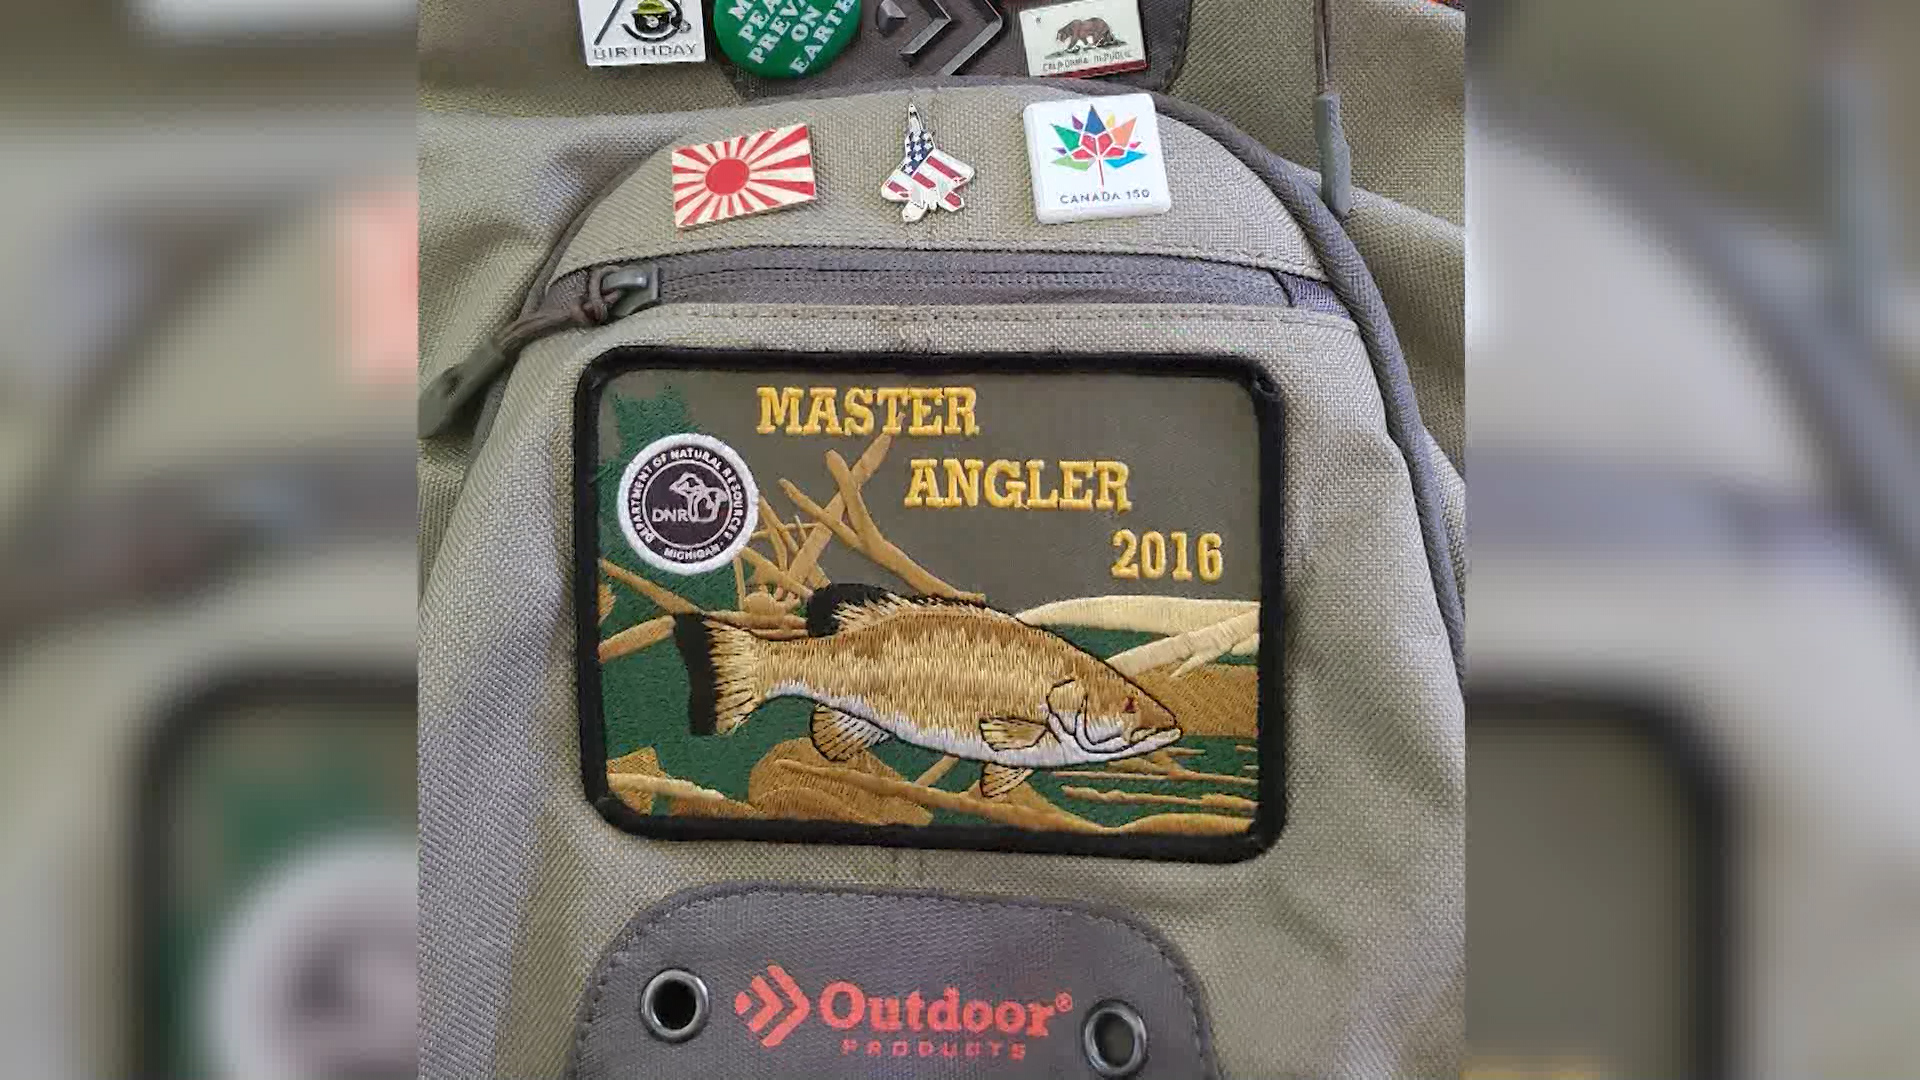 Become a 2020 master angler – WBKB 11